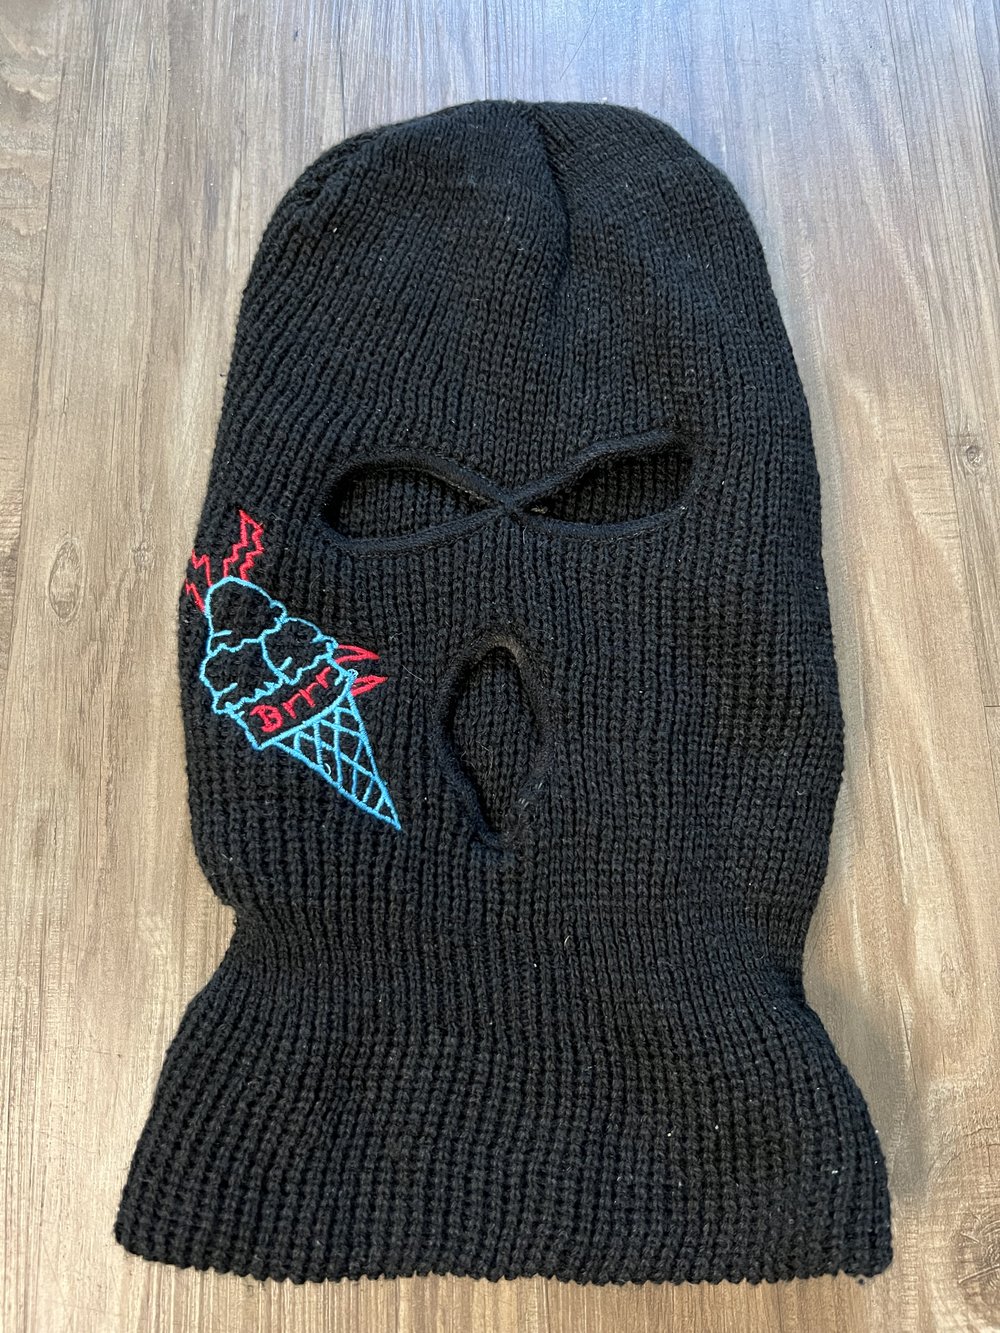 Gucci mane ski mask ice cream cone merch